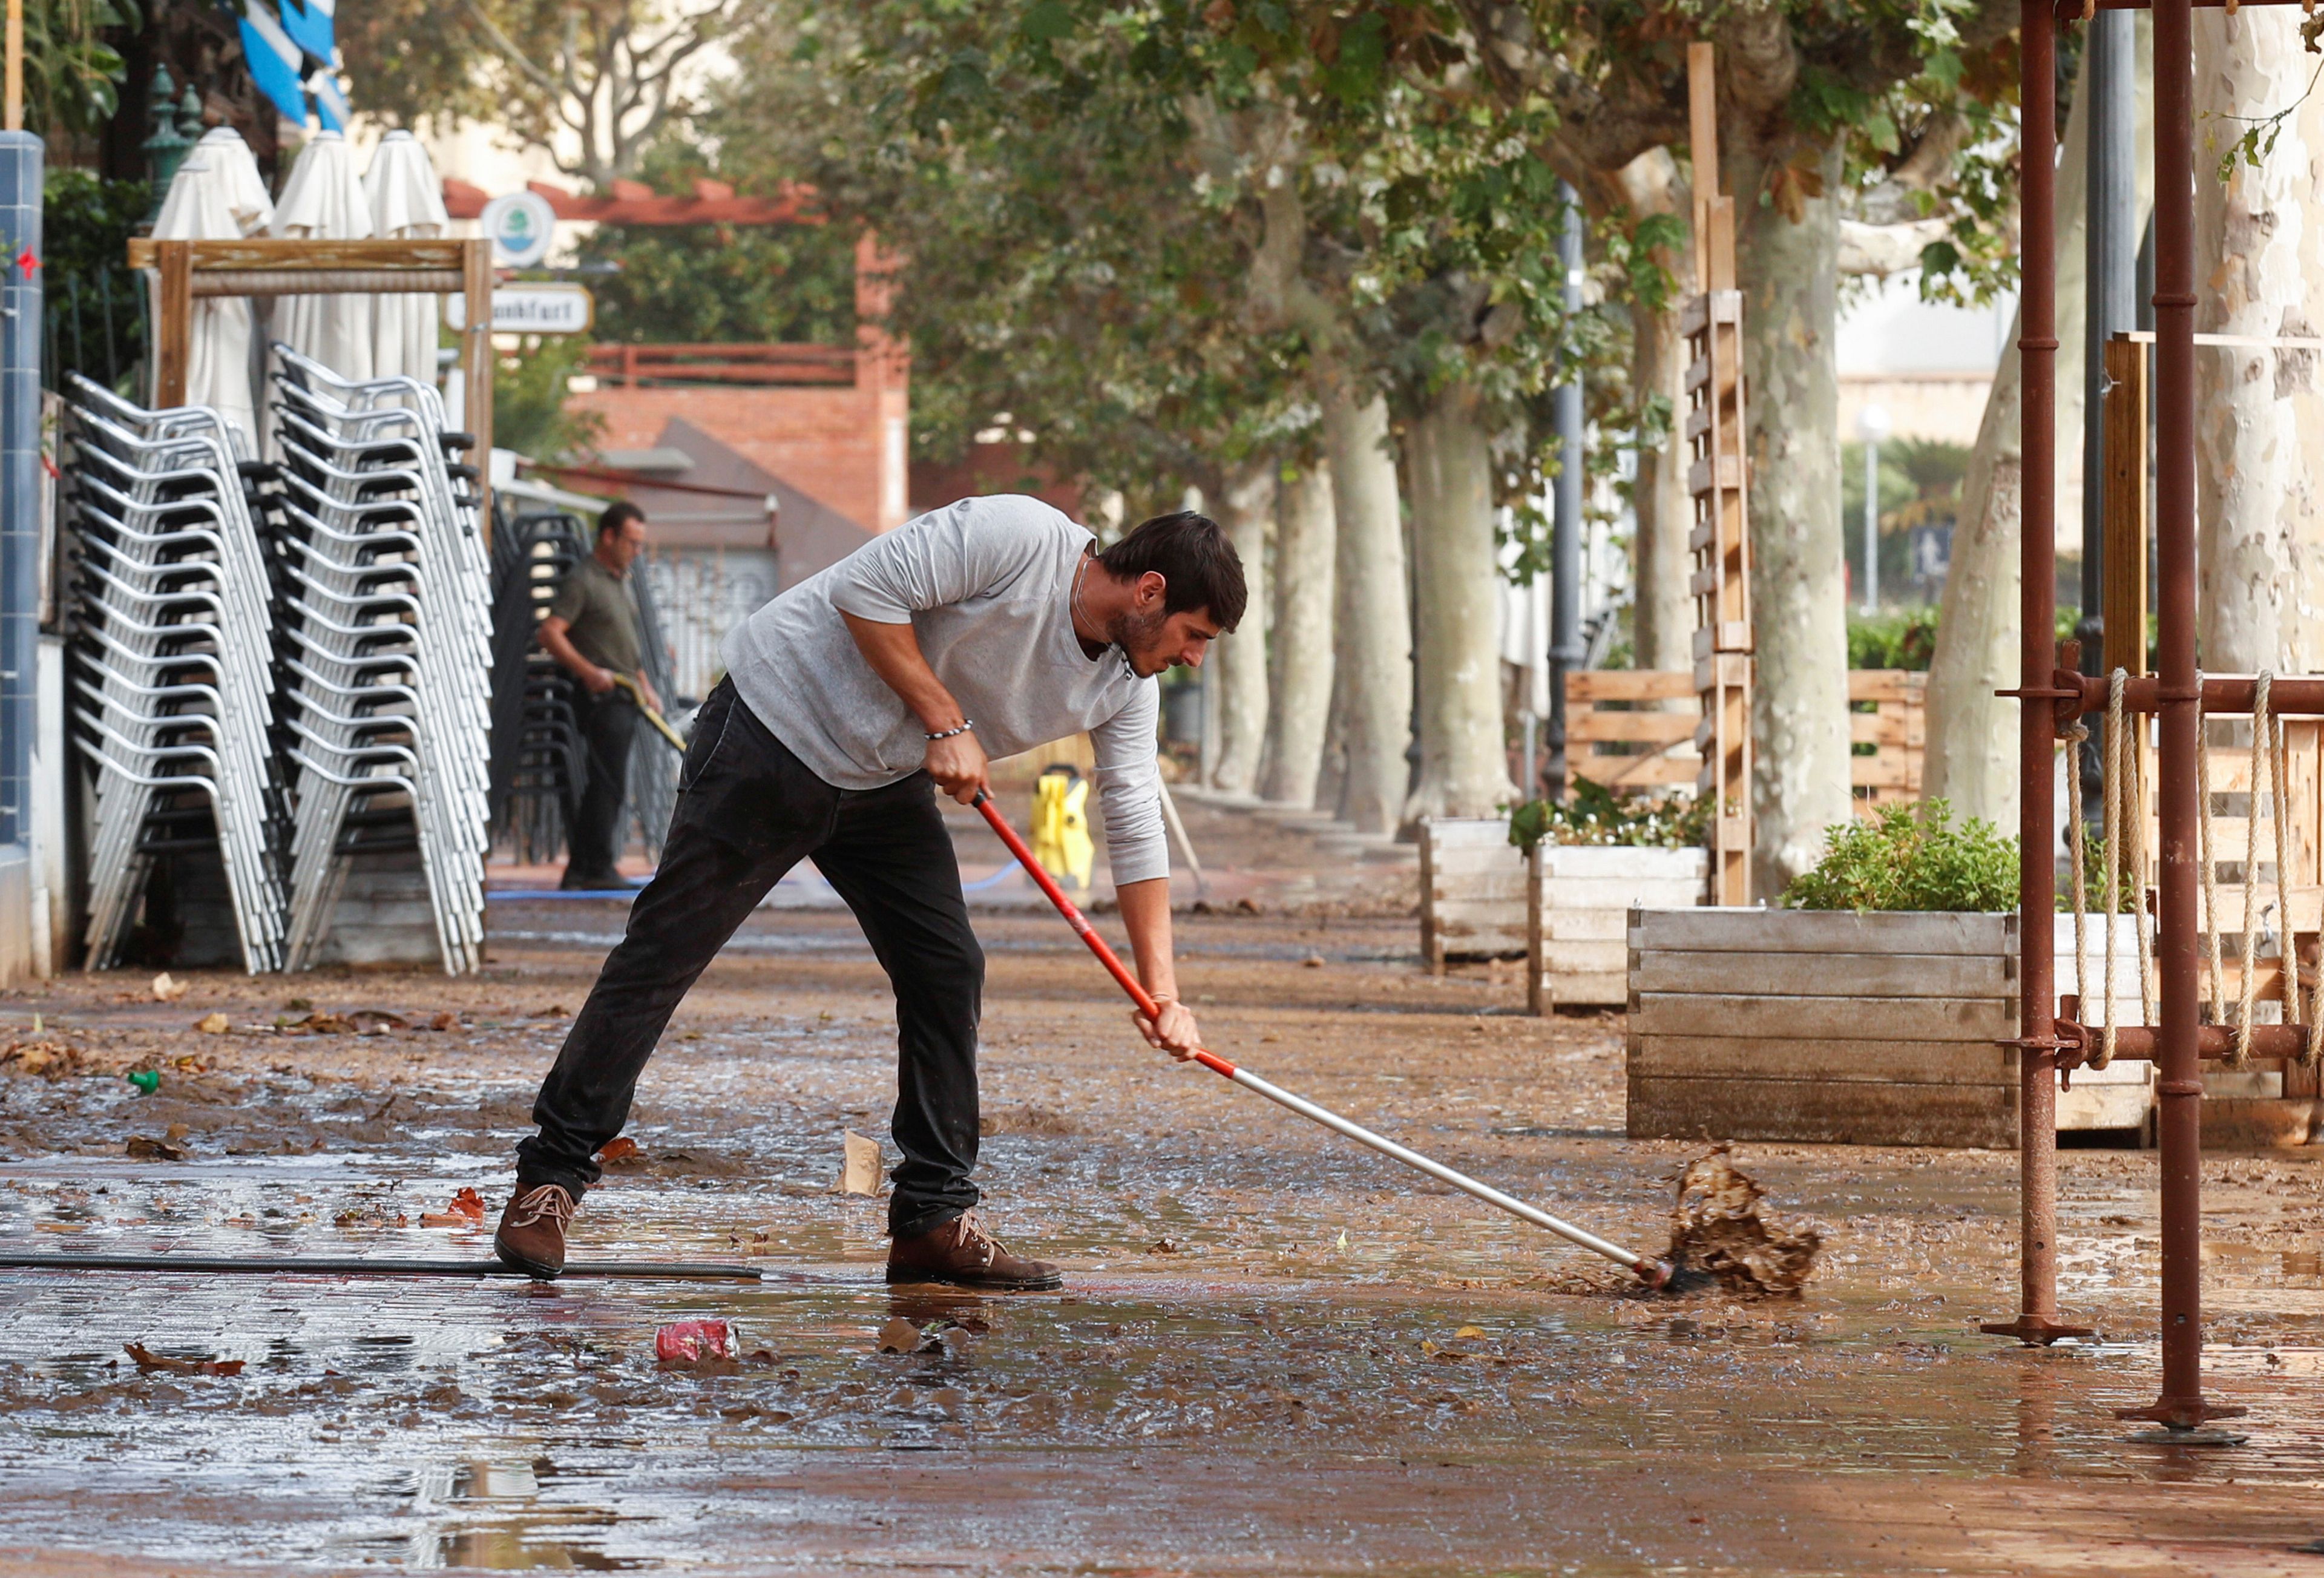 Trabajador quitando el agua en Arenys de Mar, Barcelona, tras una inundación..